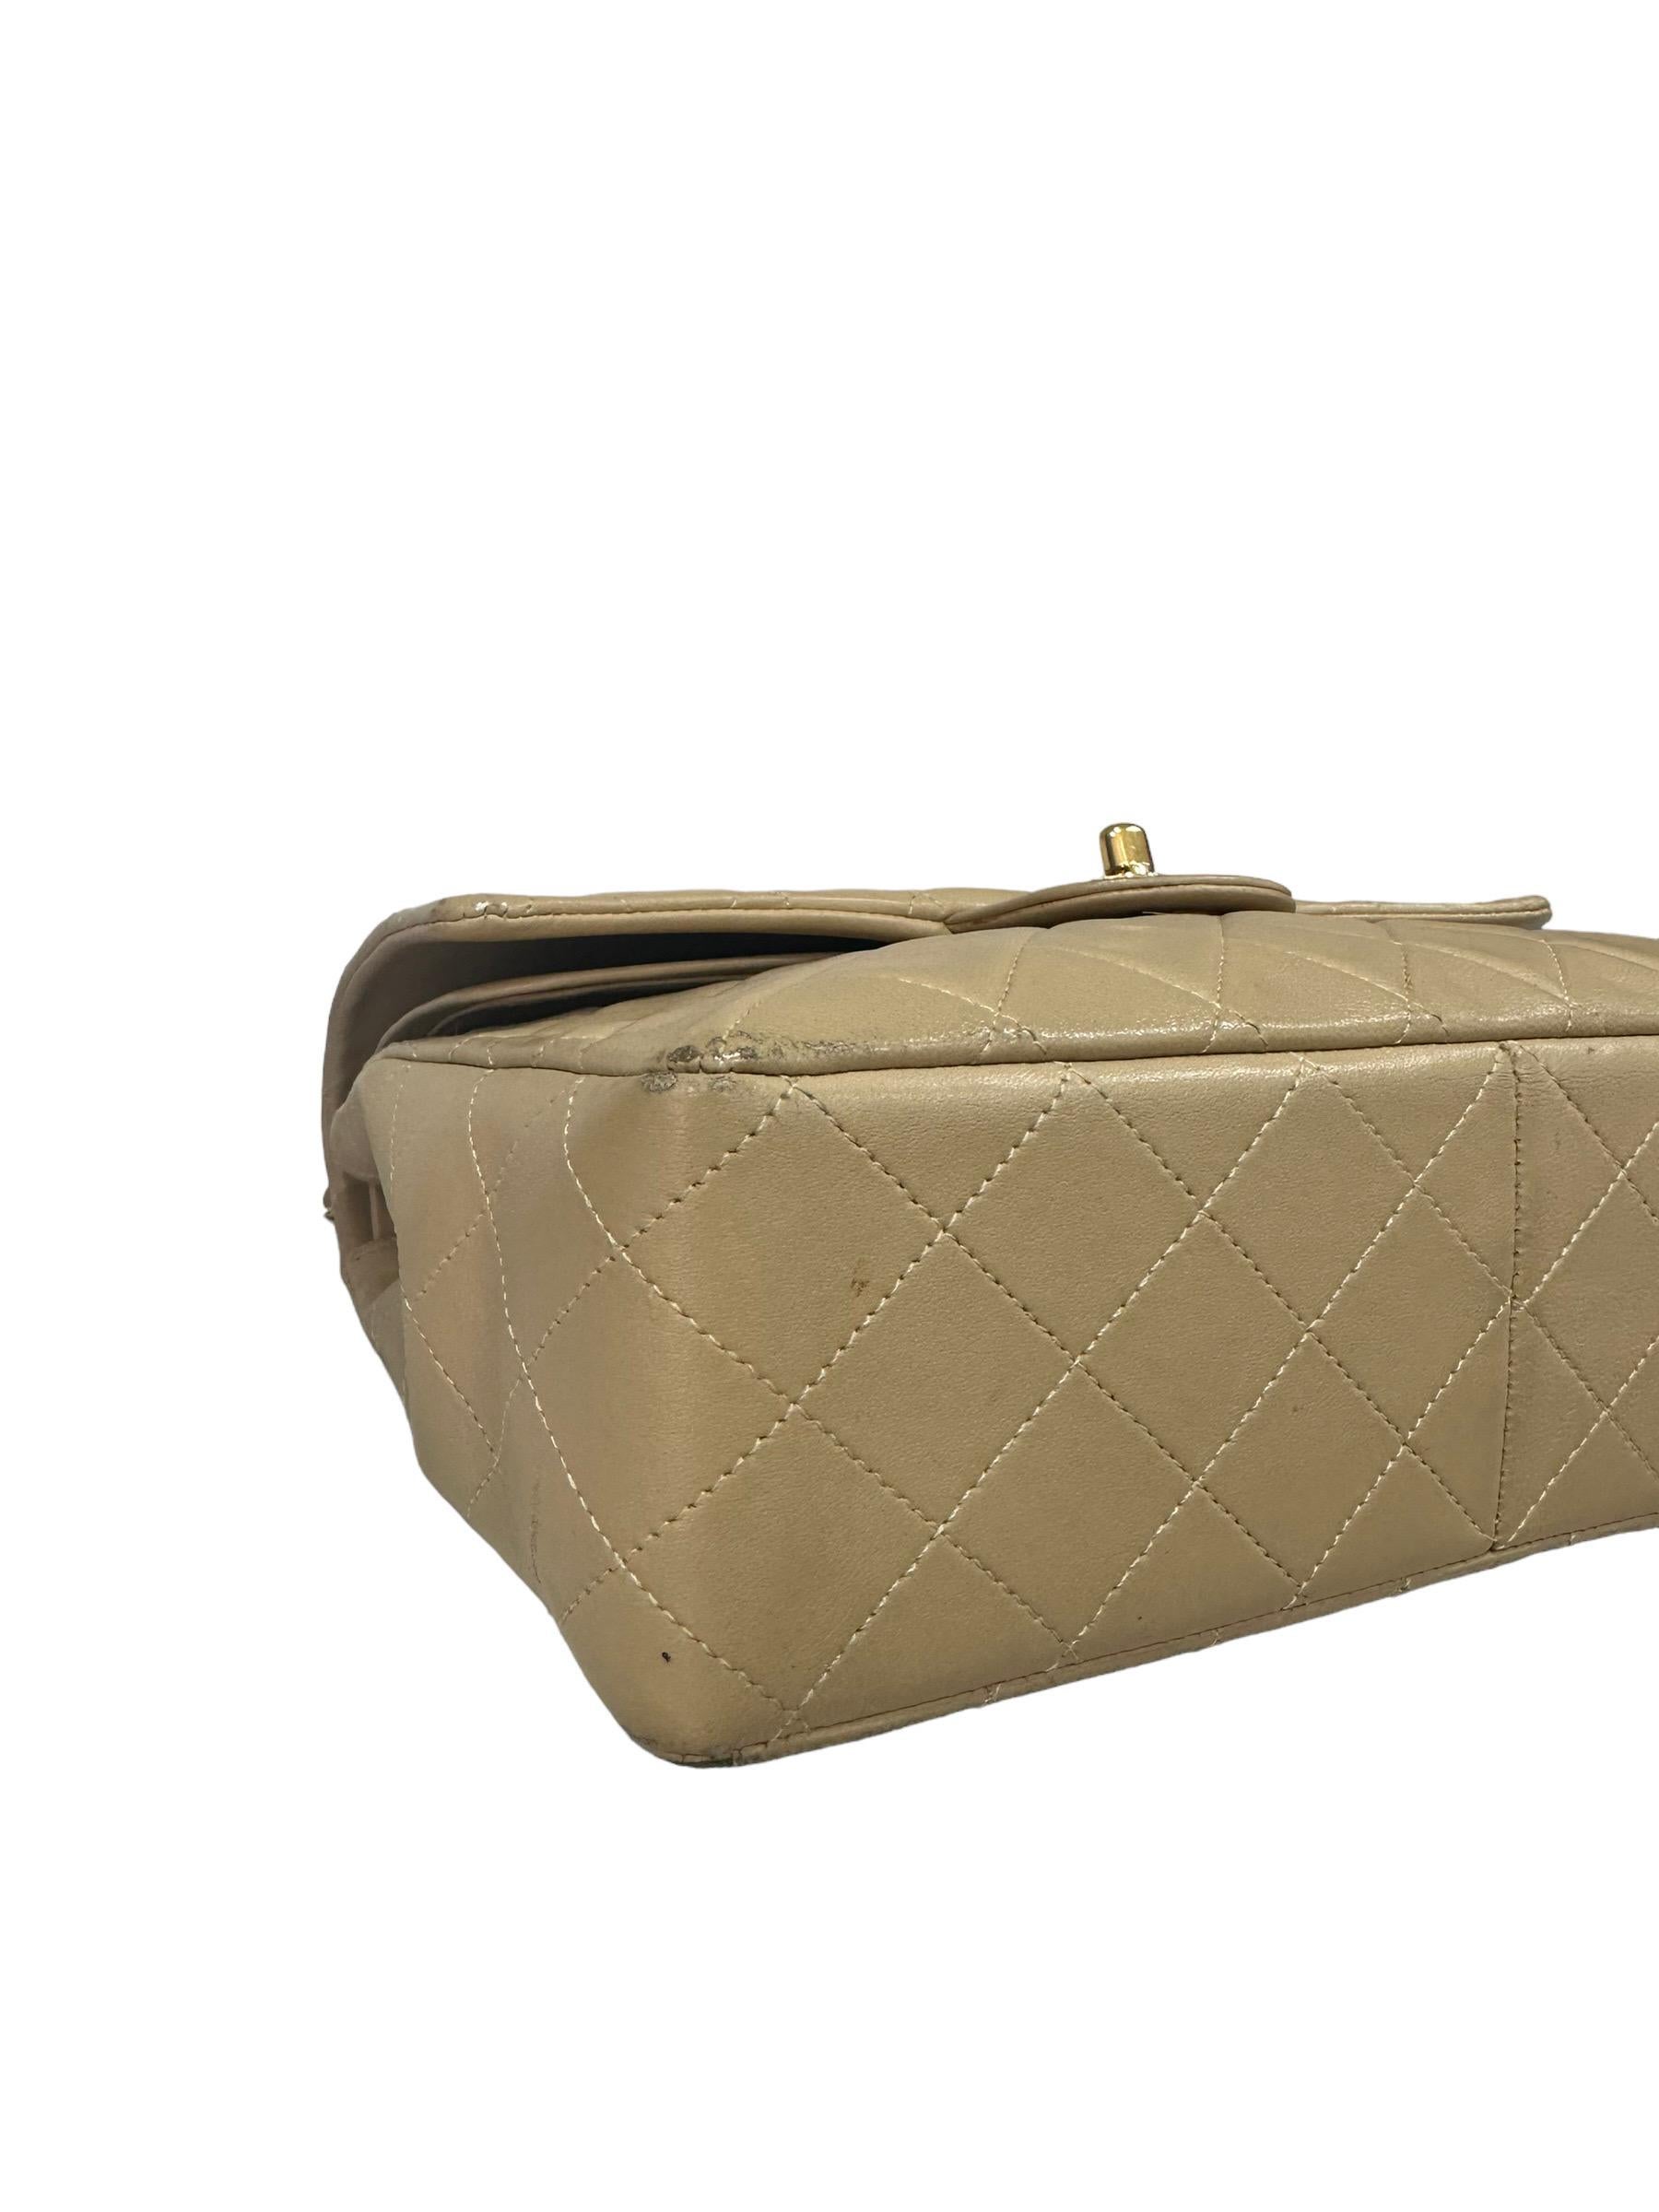 ‘90 Chanel Flap Vintage Beige Leather Shoulder Bag For Sale 7